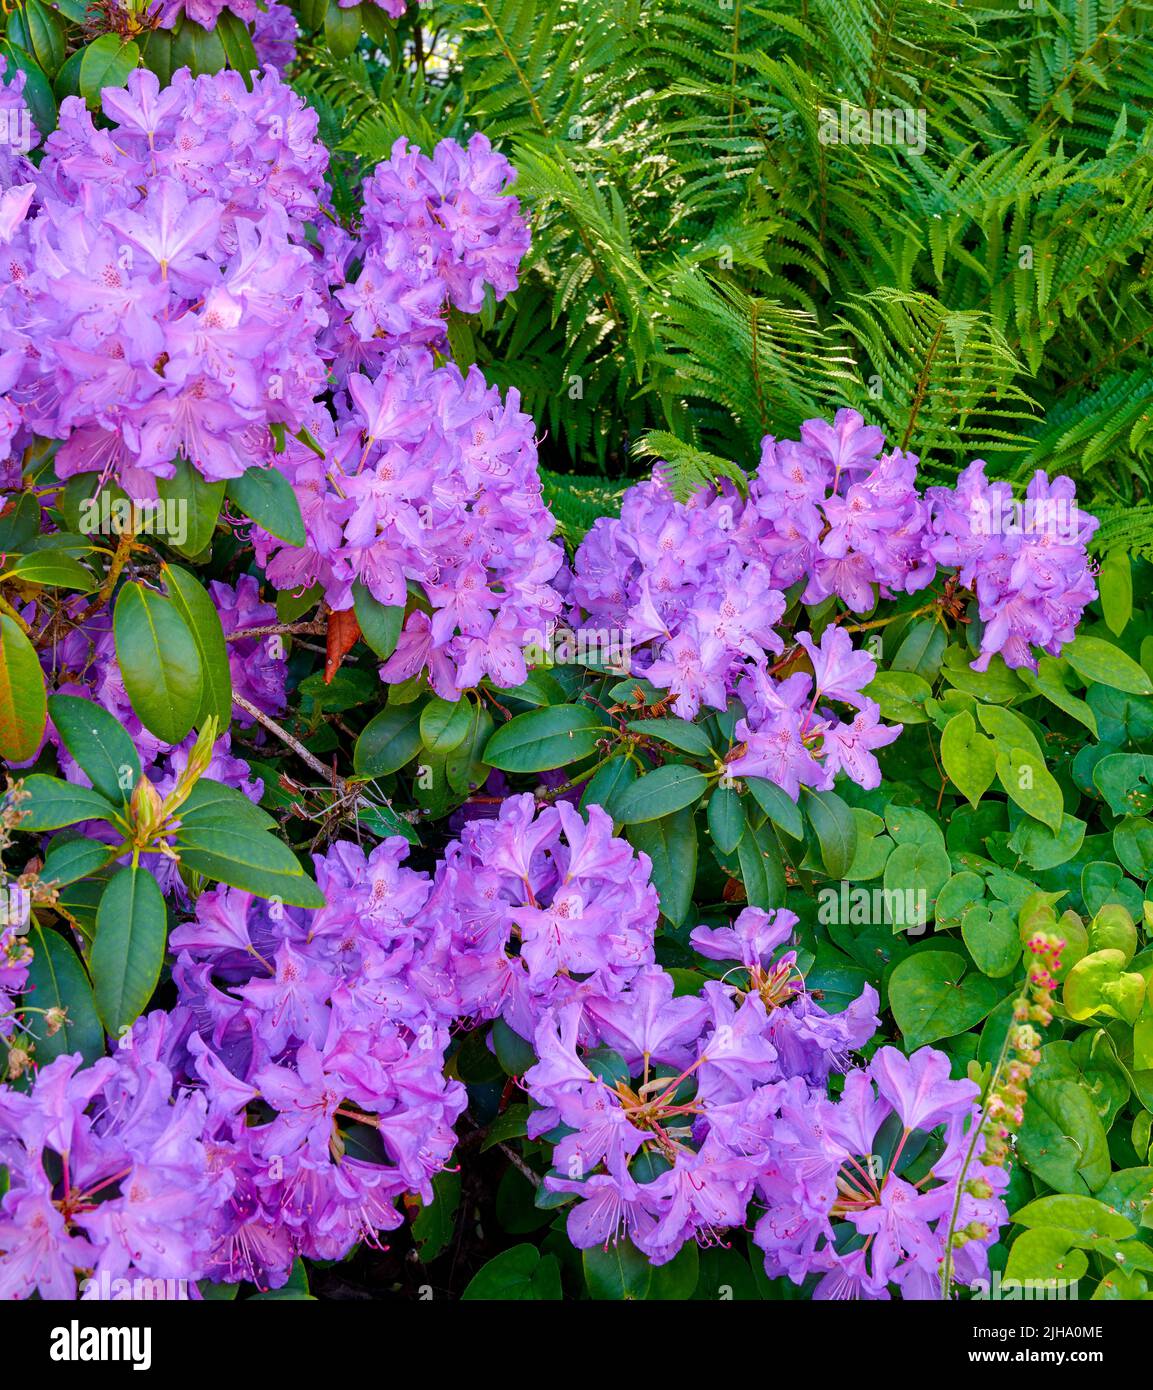 Lila Rhododendron-Blüten wachsen im Sommer in einem Garten im Hinterhof. Schöner Busch mit violett blühenden Pflanzen, der von oben auf dem Land blüht Stockfoto